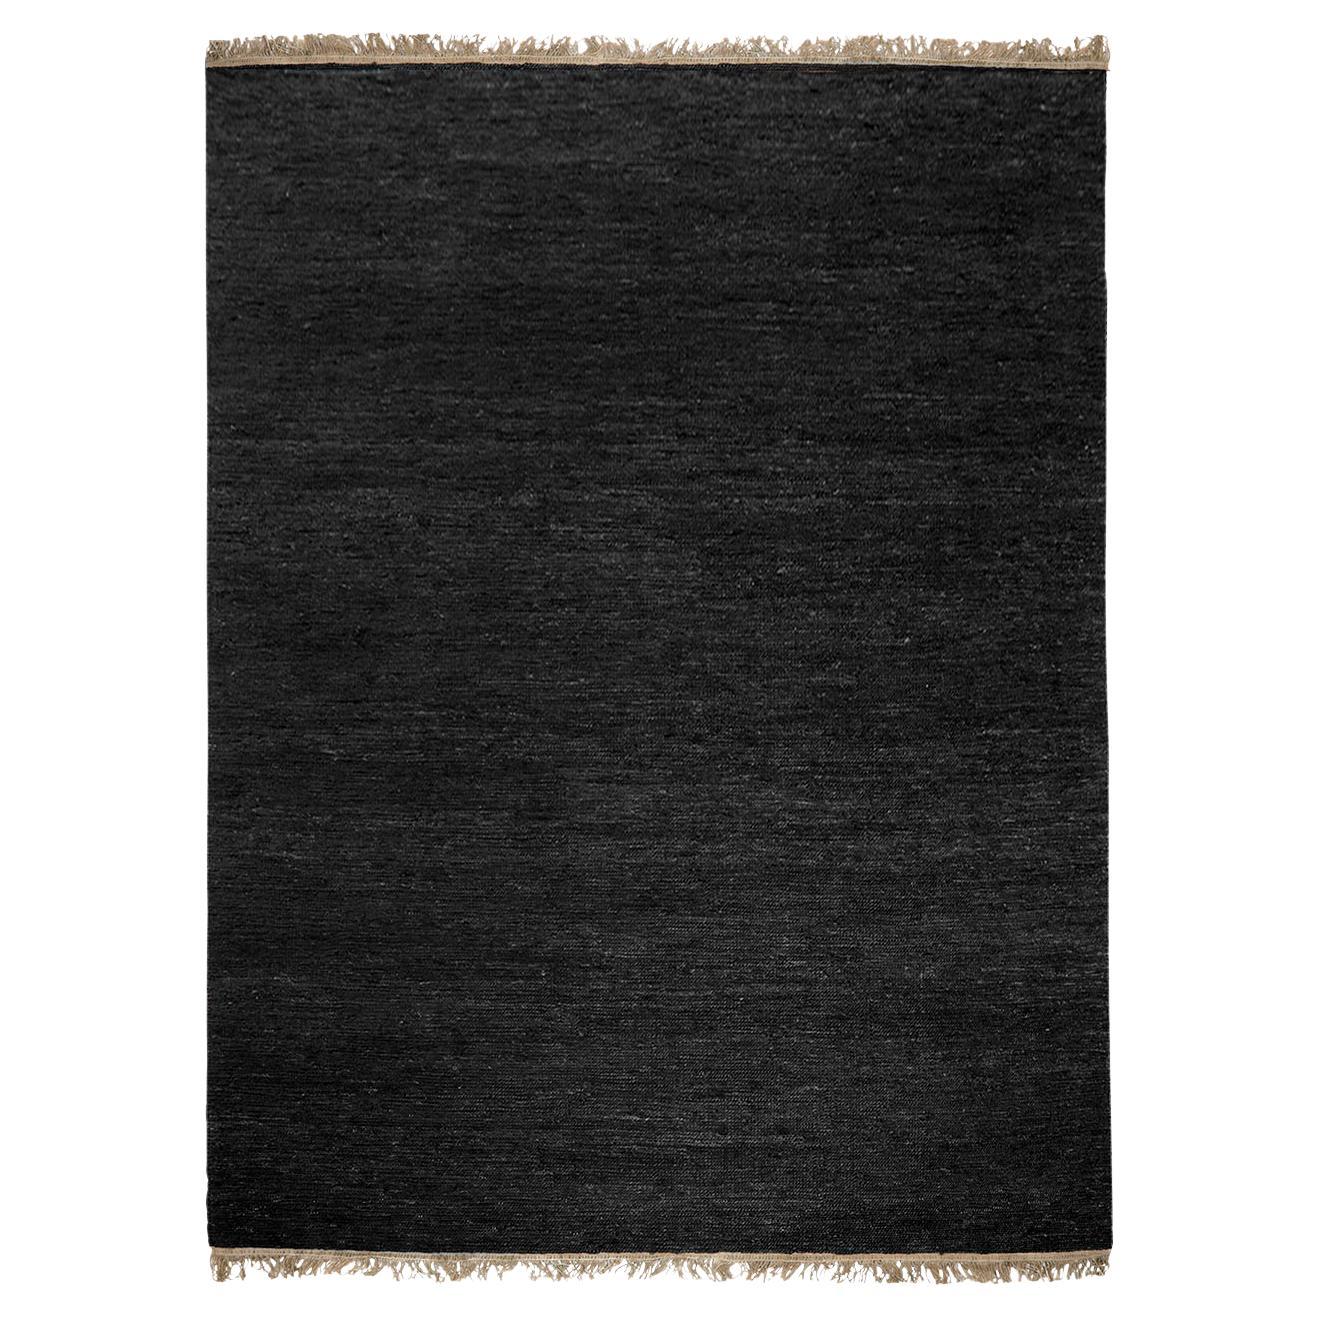 Black Sumace Carpet with Fringes by Massimo Copenhagen